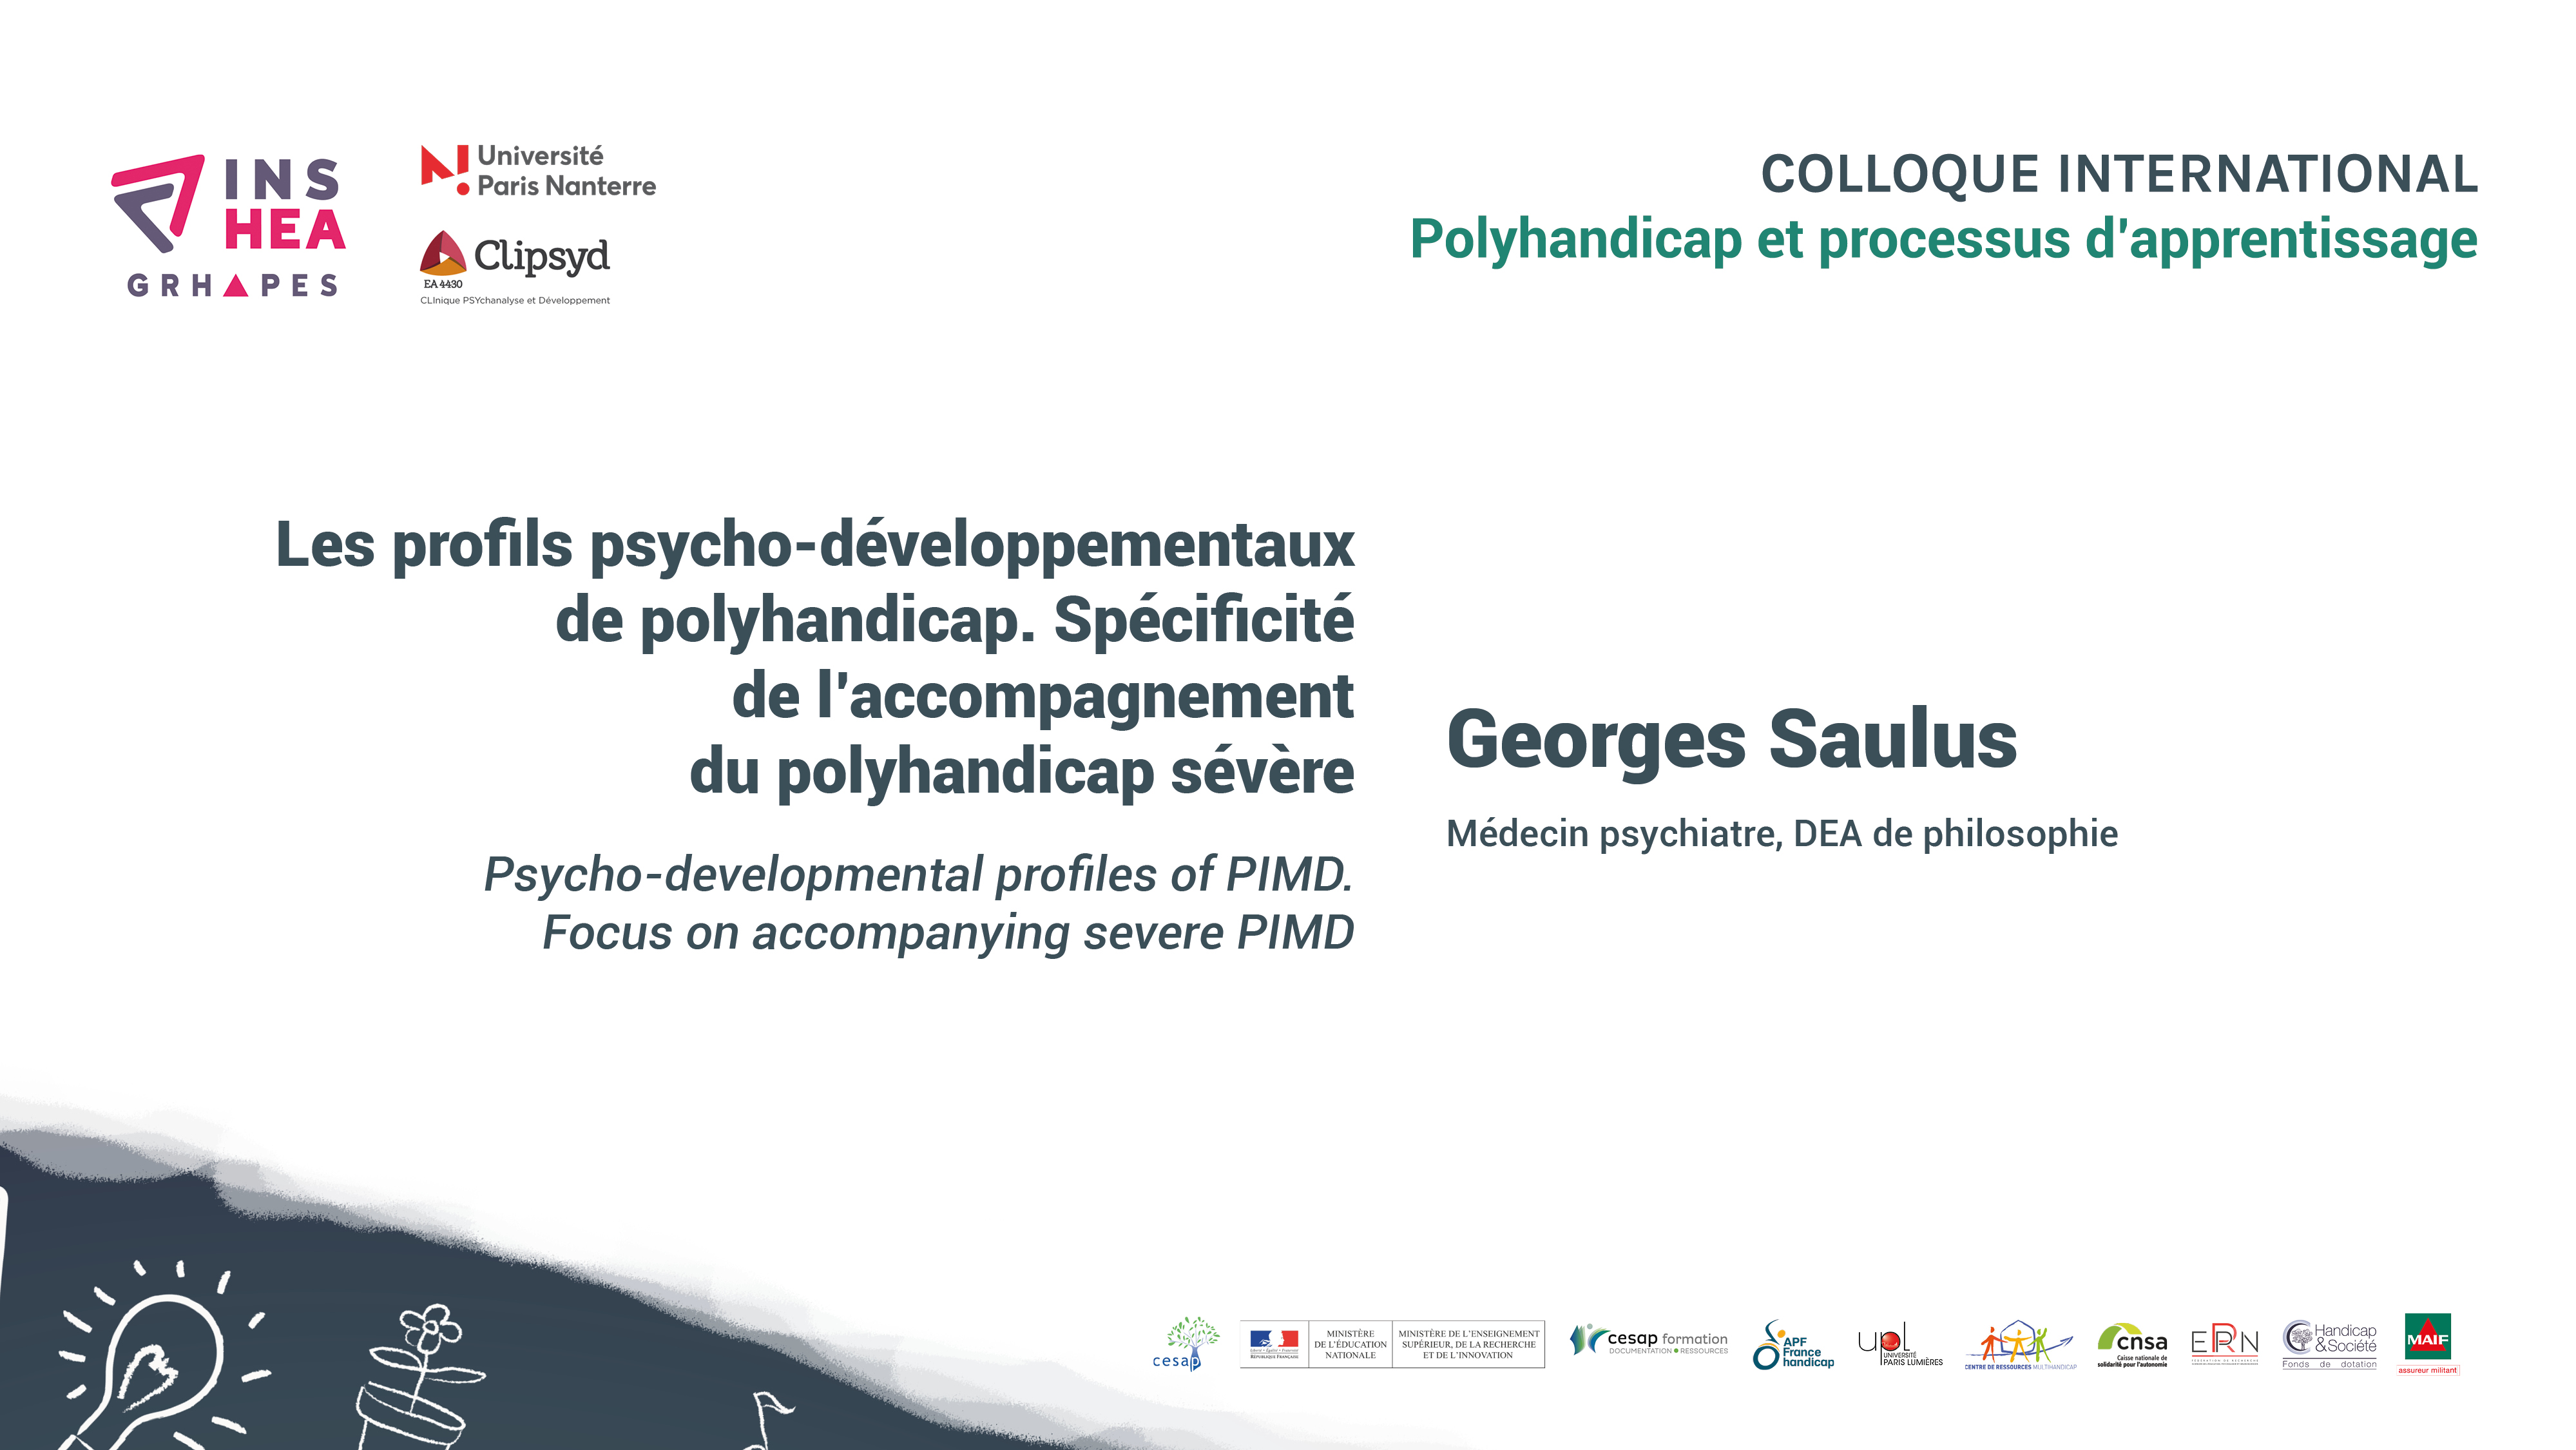 Colloque POLYHANDICAP Georges Saulus : « Les profils psycho-développementaux
de polyhandicap. Spécificité de l’accompagnement du polyhandicap sévère »